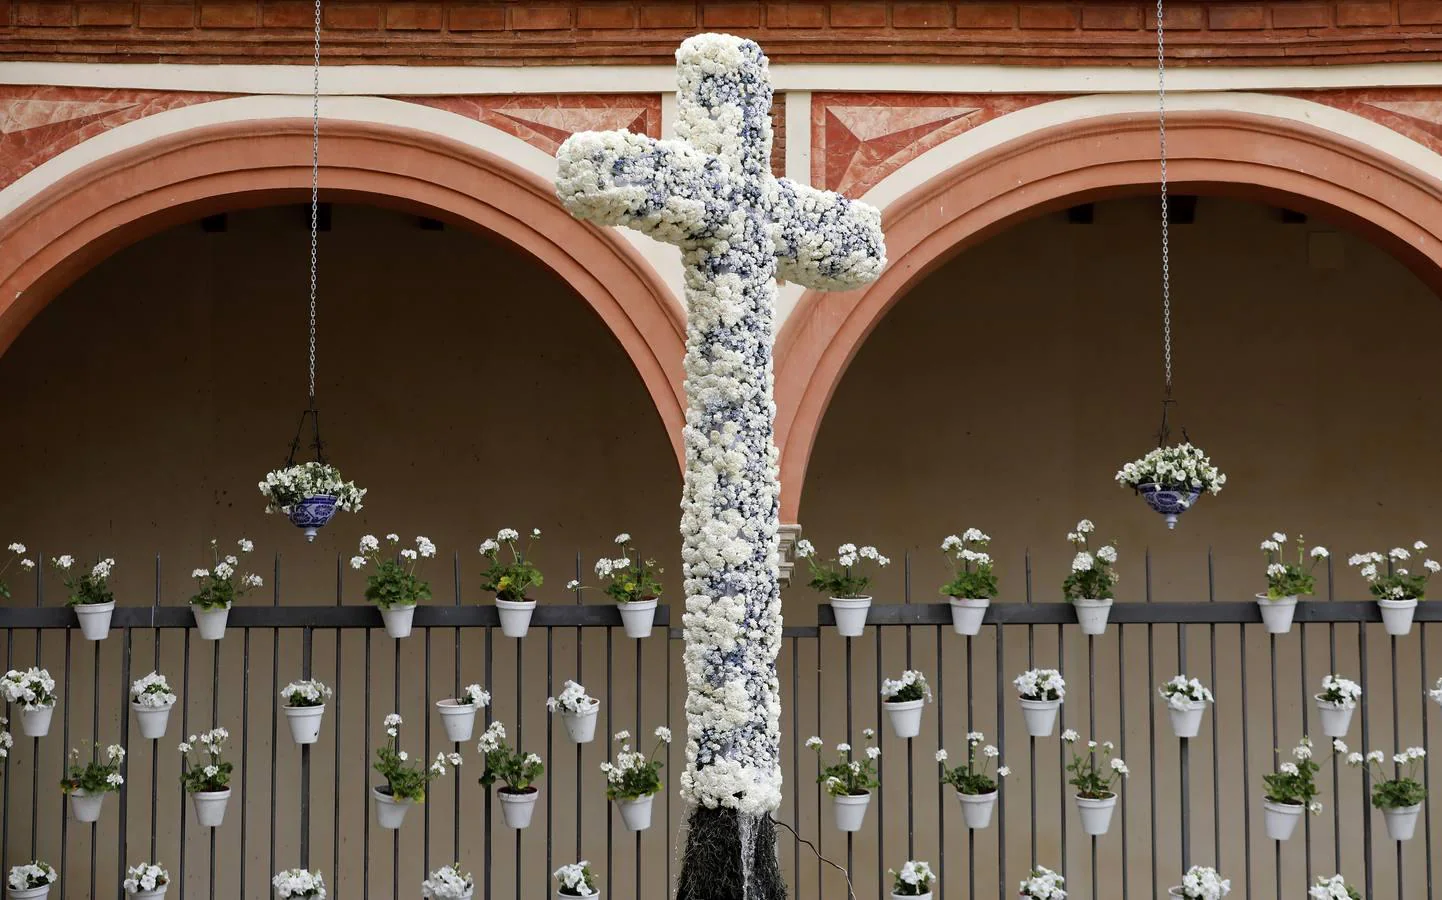 Las Cruces de Mayo 2018 ganadoras, en imágenes